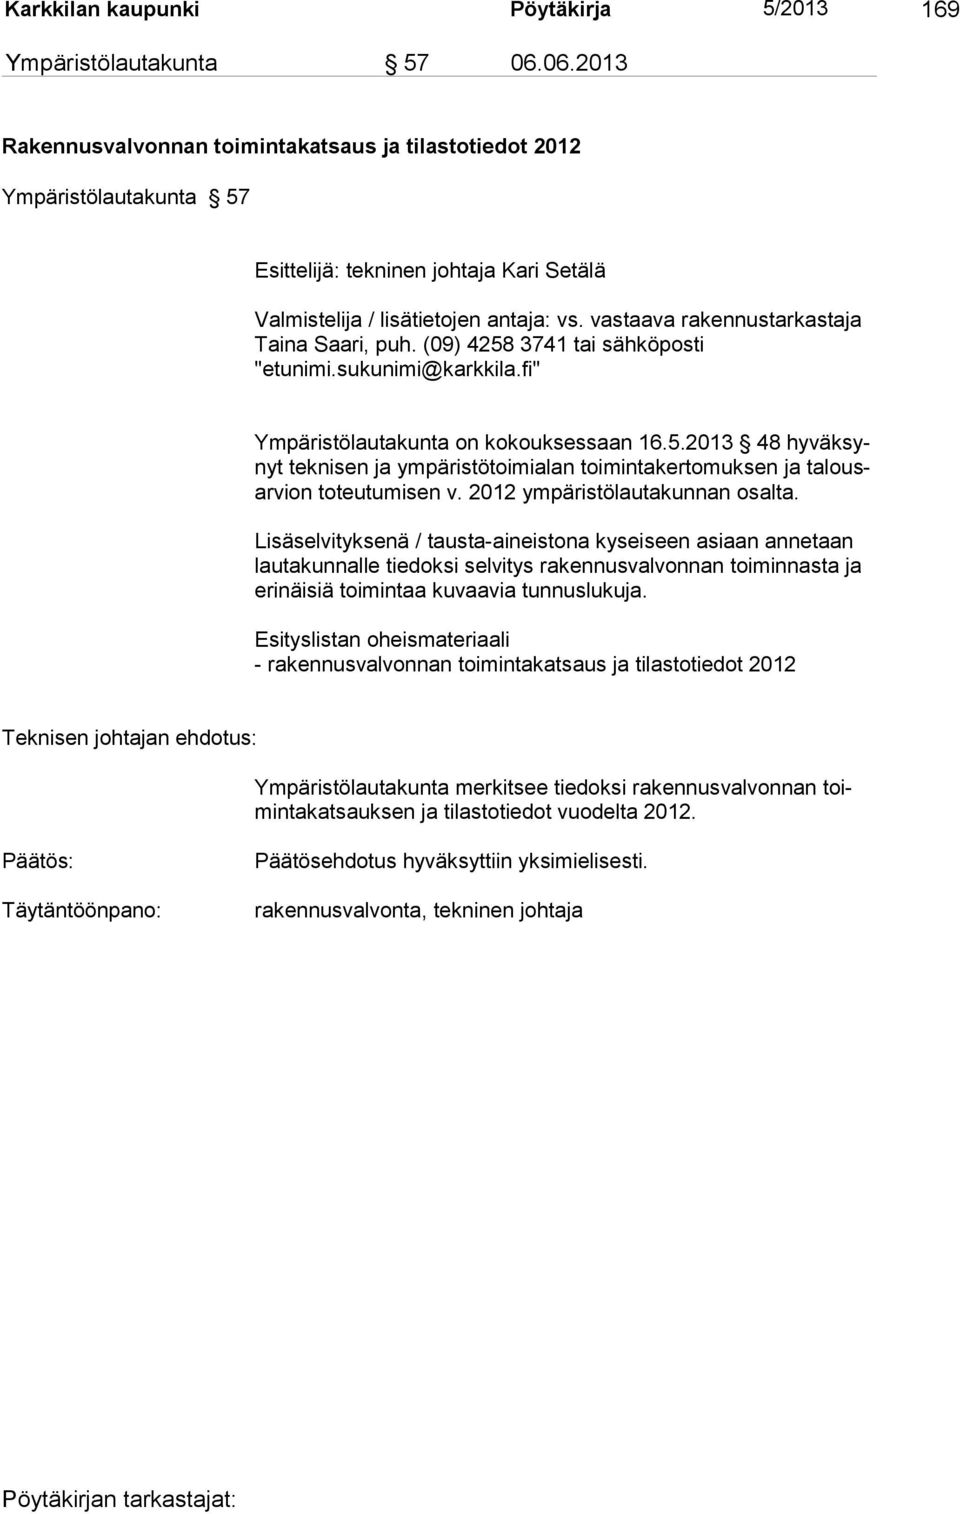 vastaava rakennustarkastaja Taina Saari, puh. (09) 4258 3741 tai sähköposti "etunimi.sukunimi@karkkila.fi" Ympäristölautakunta on kokouksessaan 16.5.2013 48 hyväksynyt tek ni sen ja ym päristötoimialan toimintakertomuksen ja talousar vion to teu tumisen v.